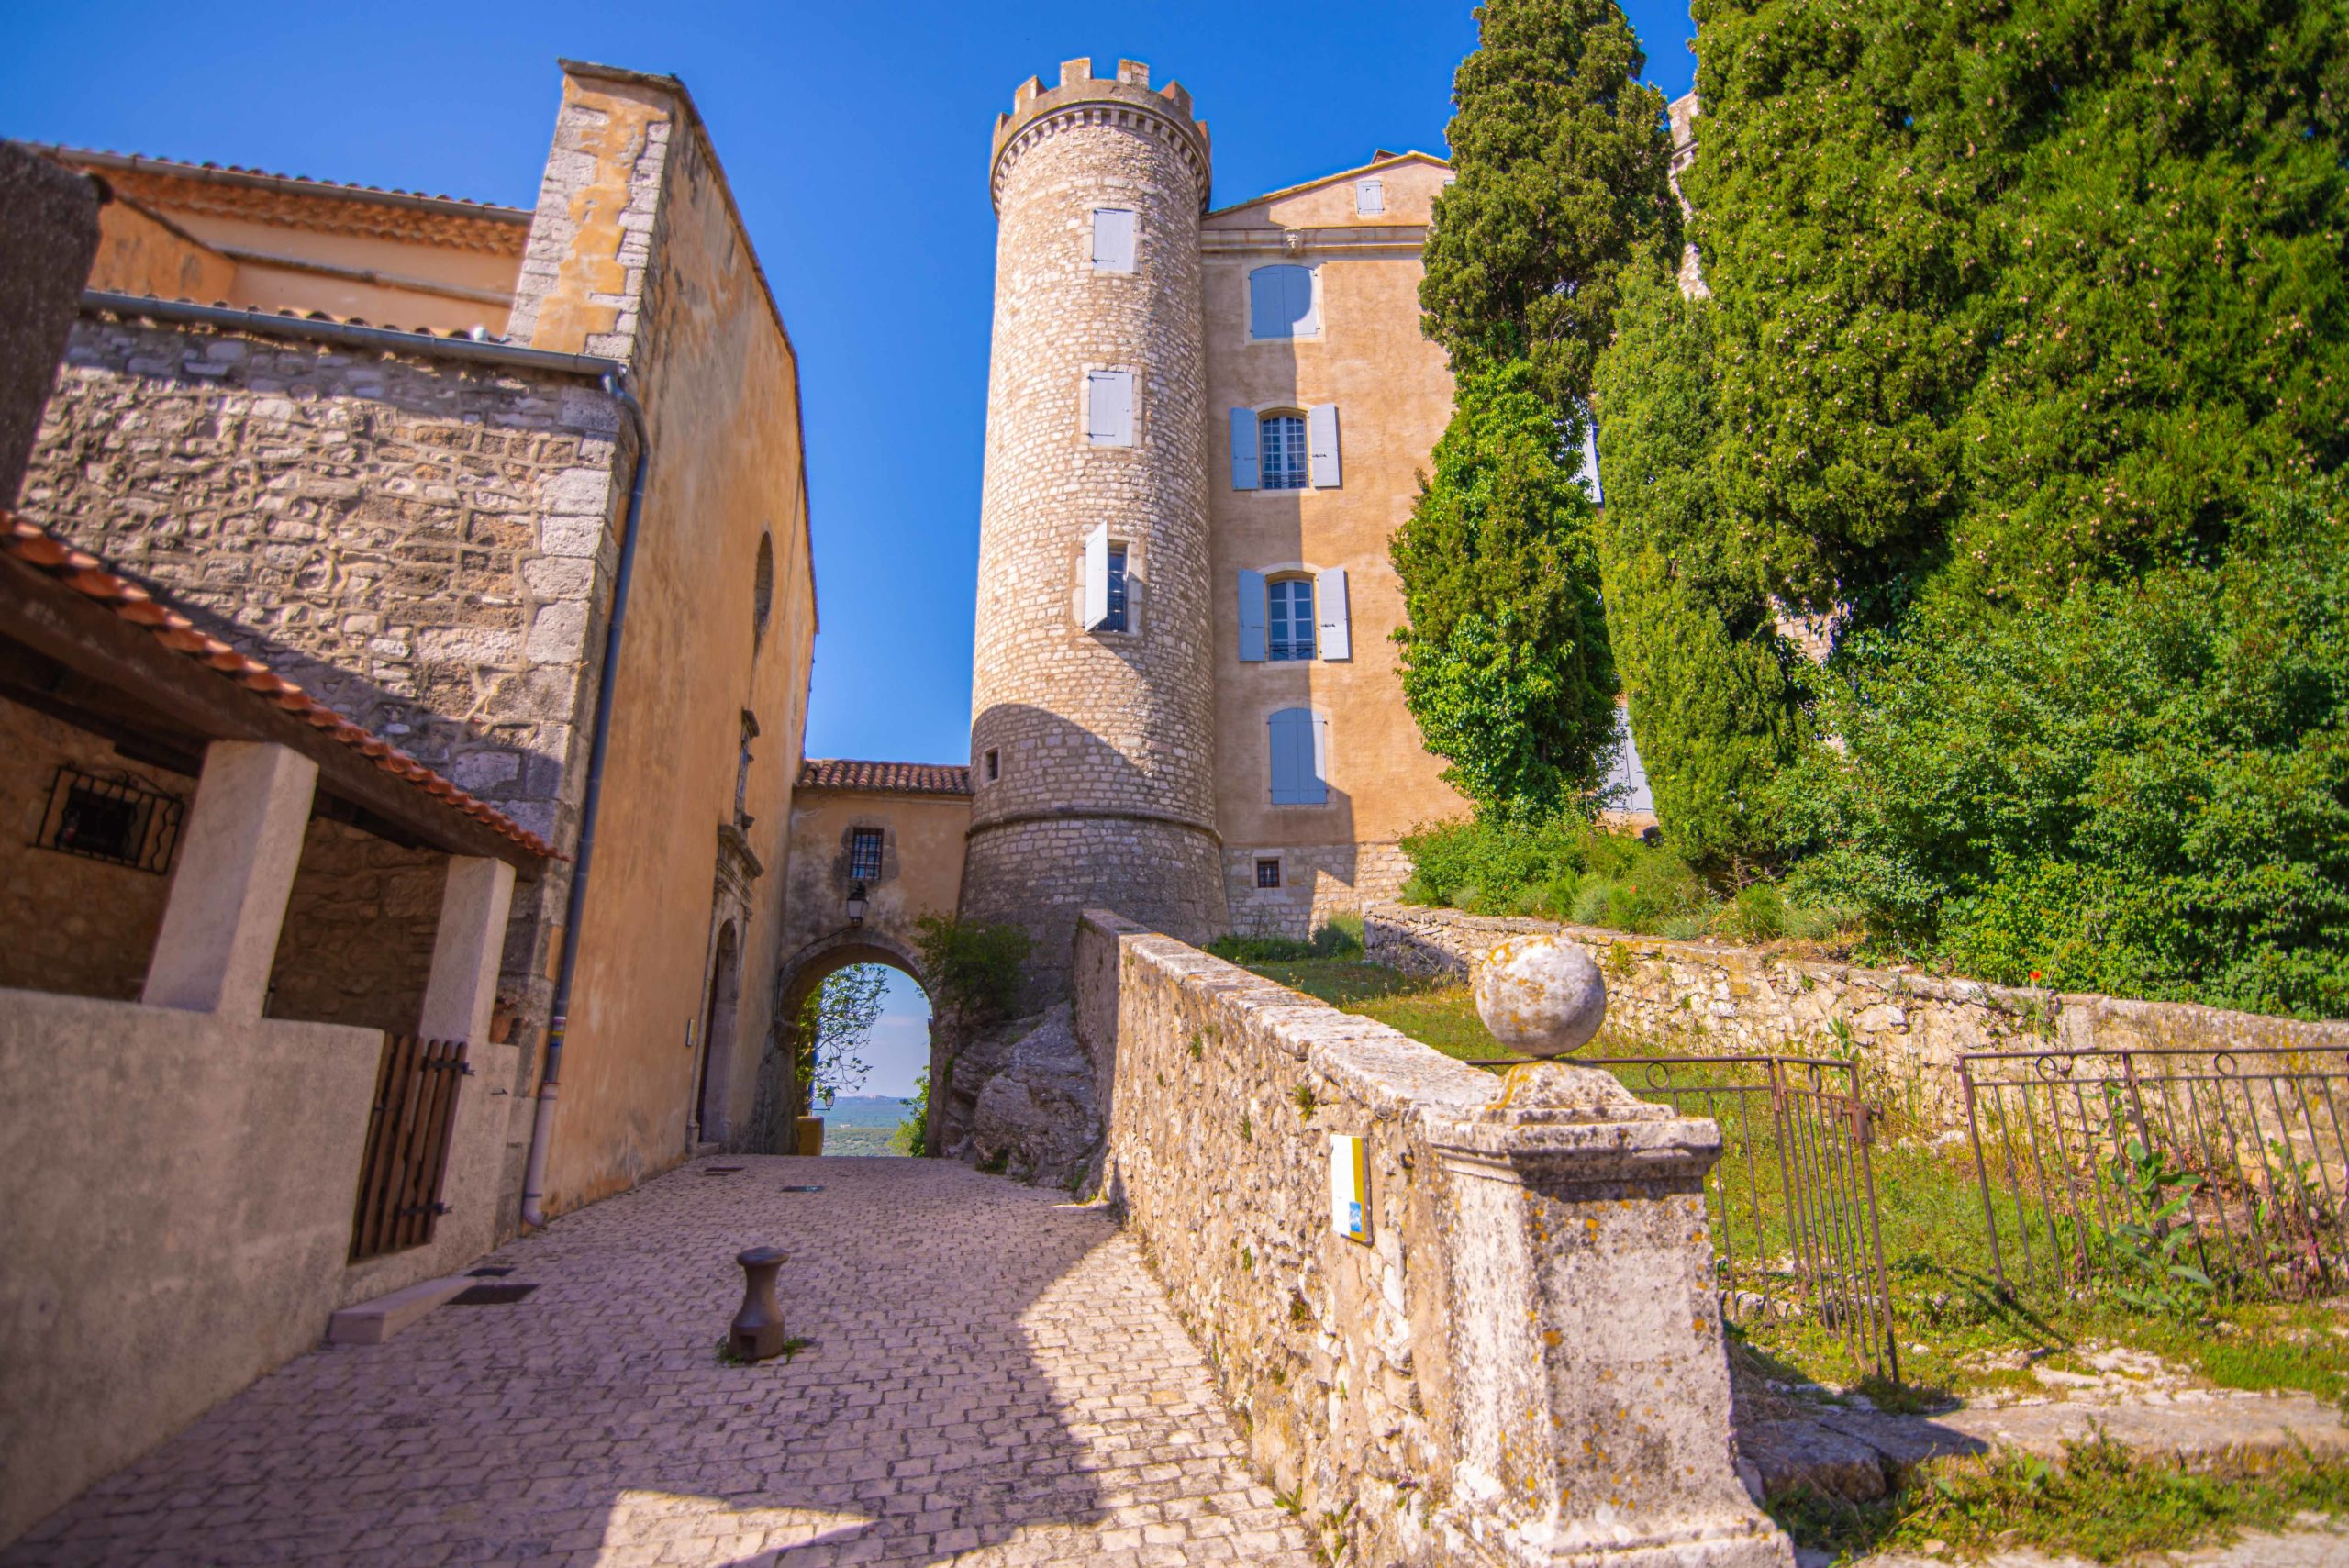 Saint-Martin-de-Pallières département du Var Provence Alpes Côte d'Azur blog voyage